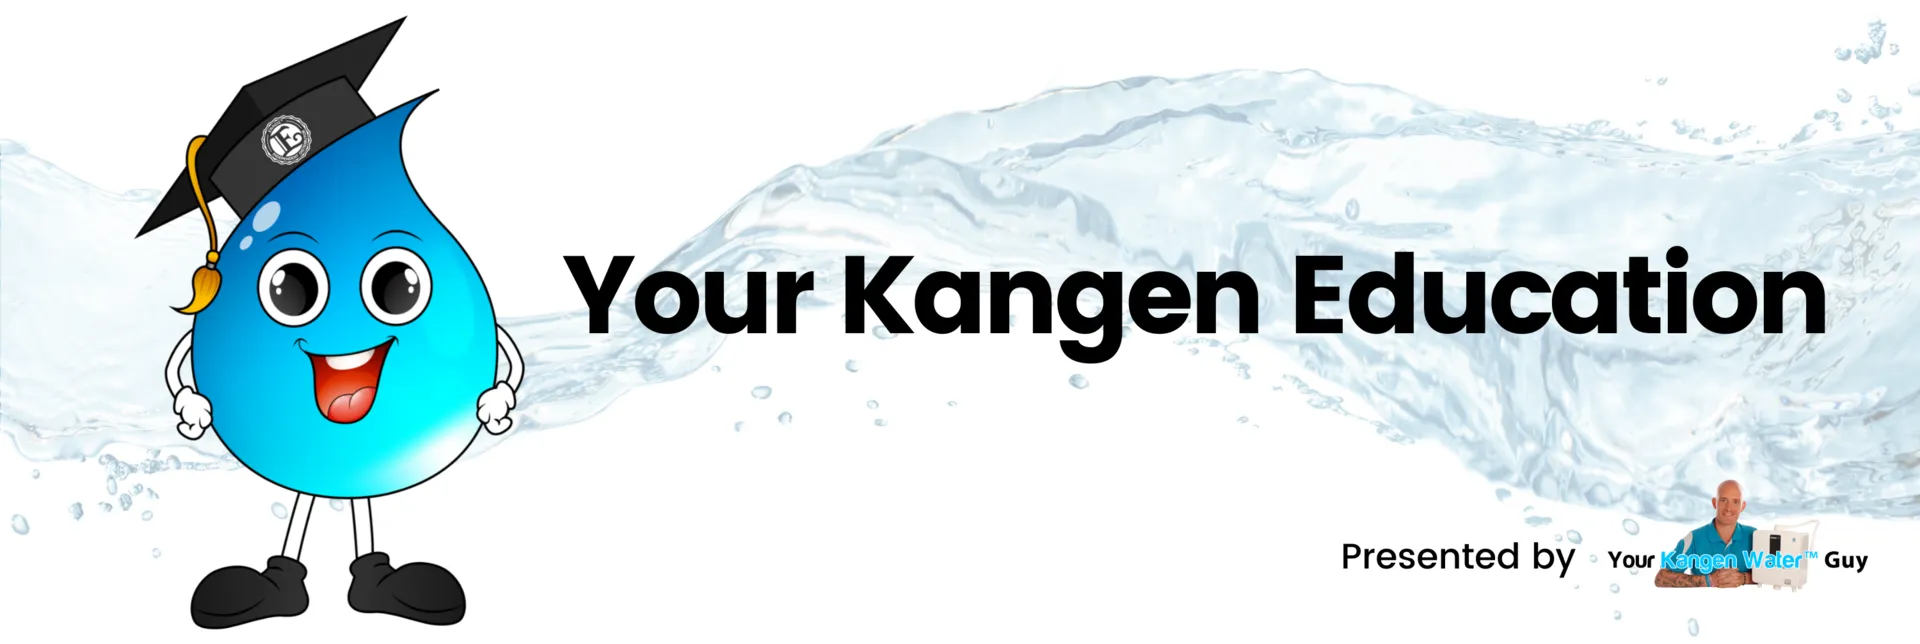 Your Kangen Education